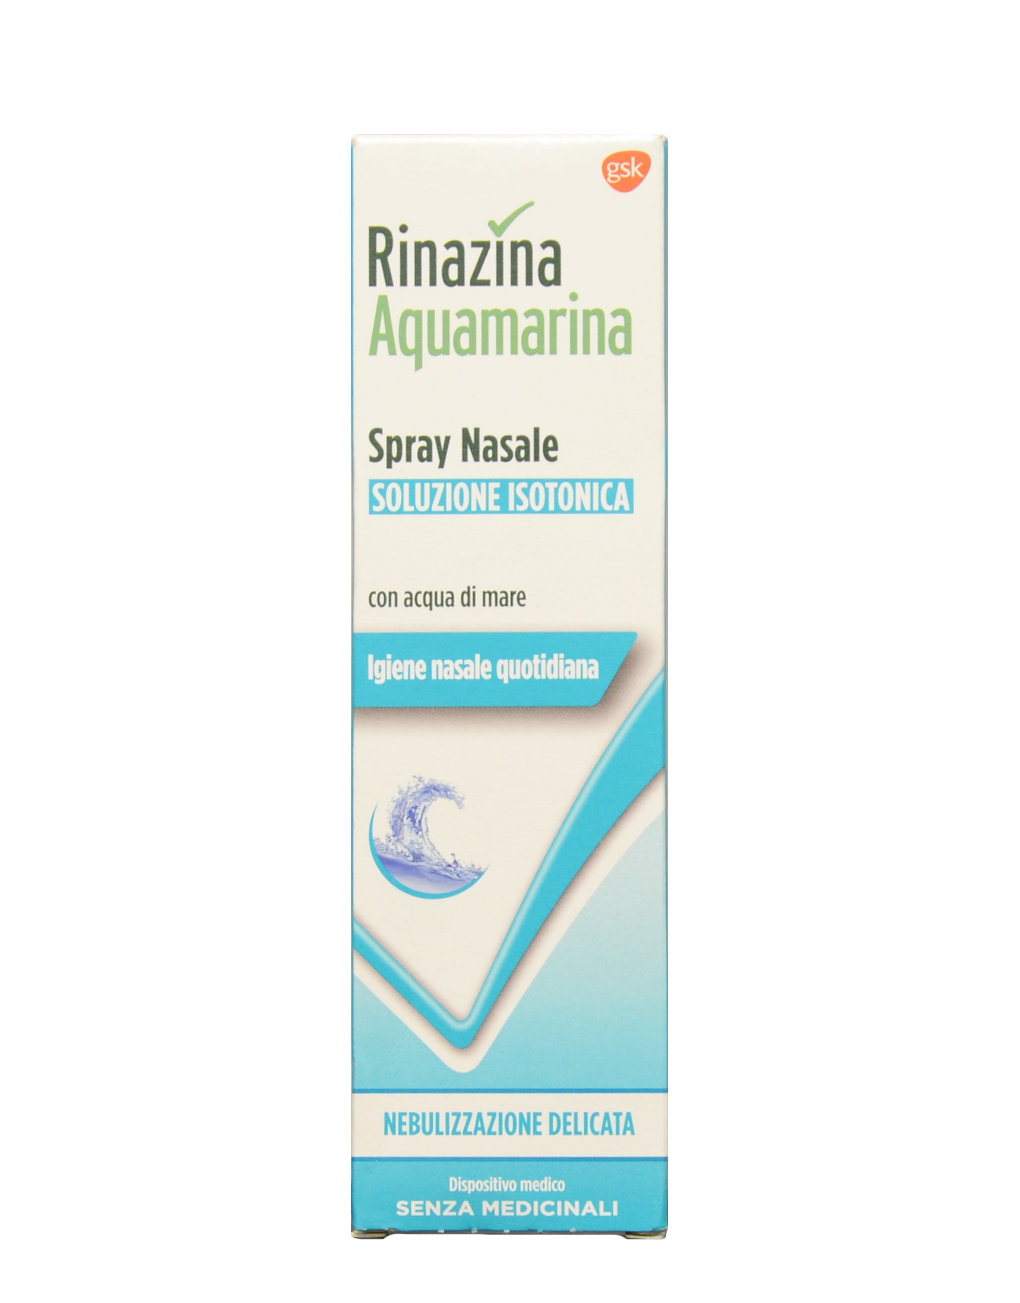 Rinazina Aquamarina Spray Nasale - Soluzione Isotonica Nebulizzazione  Delicata by Rinazina, 100ml 